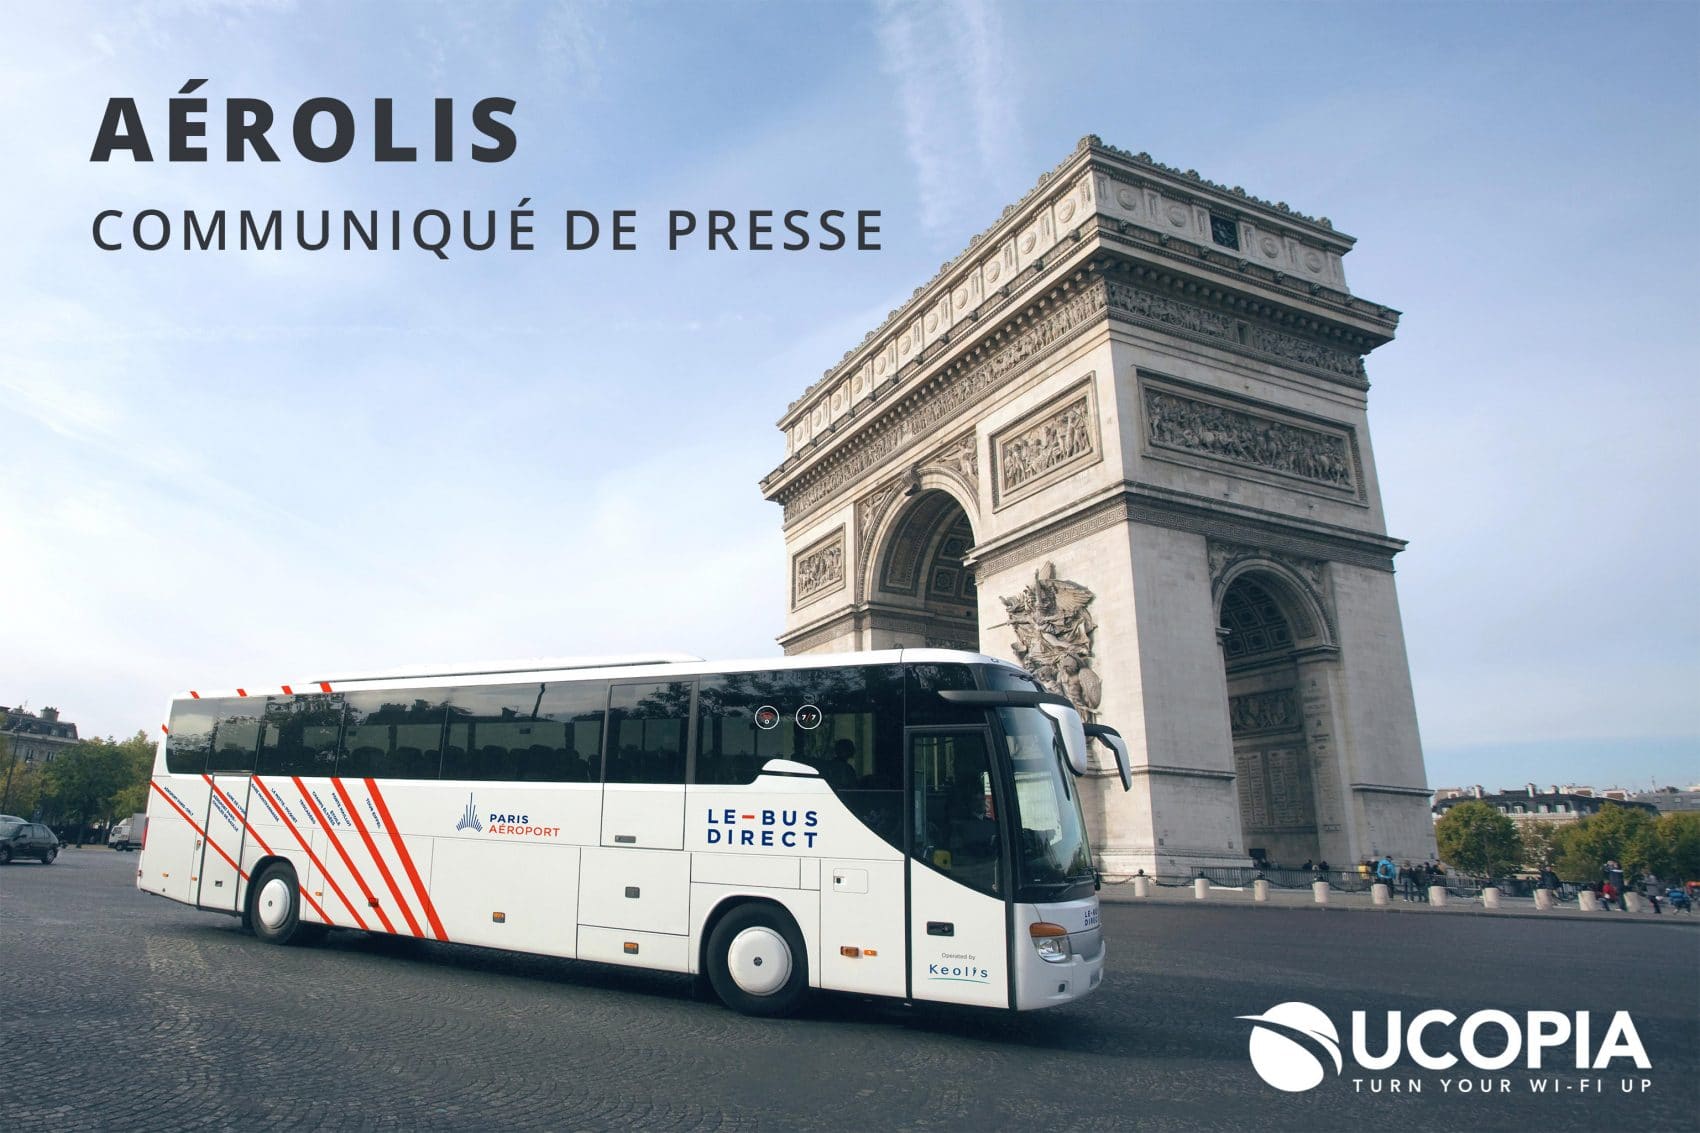 Aérolis wählt UCOPIA für sein kostenloses WLAN in Bussen